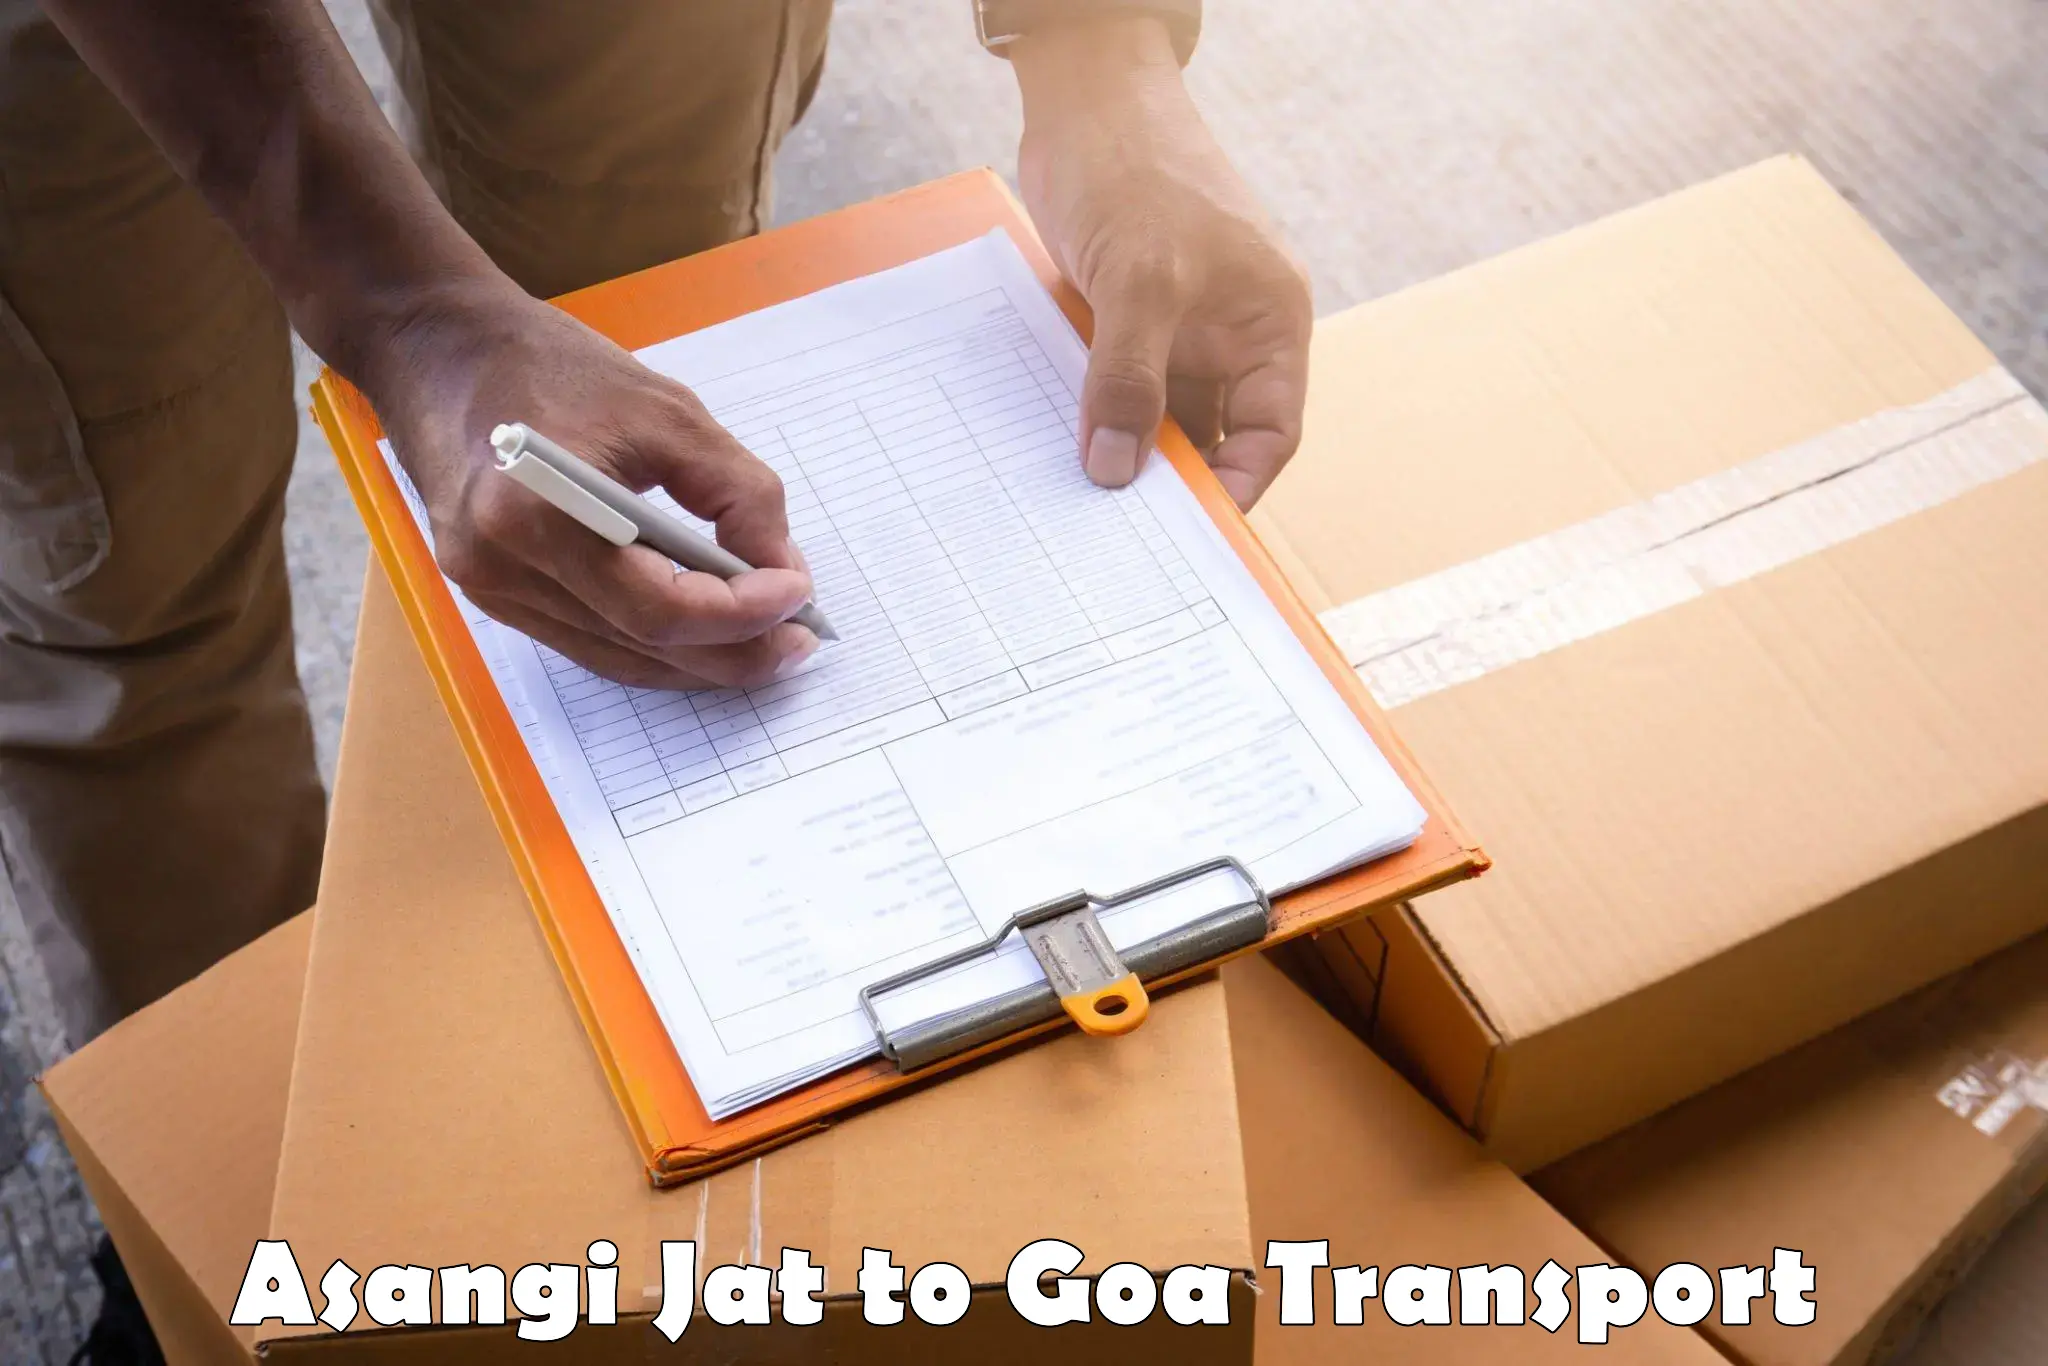 Cargo train transport services Asangi Jat to Goa